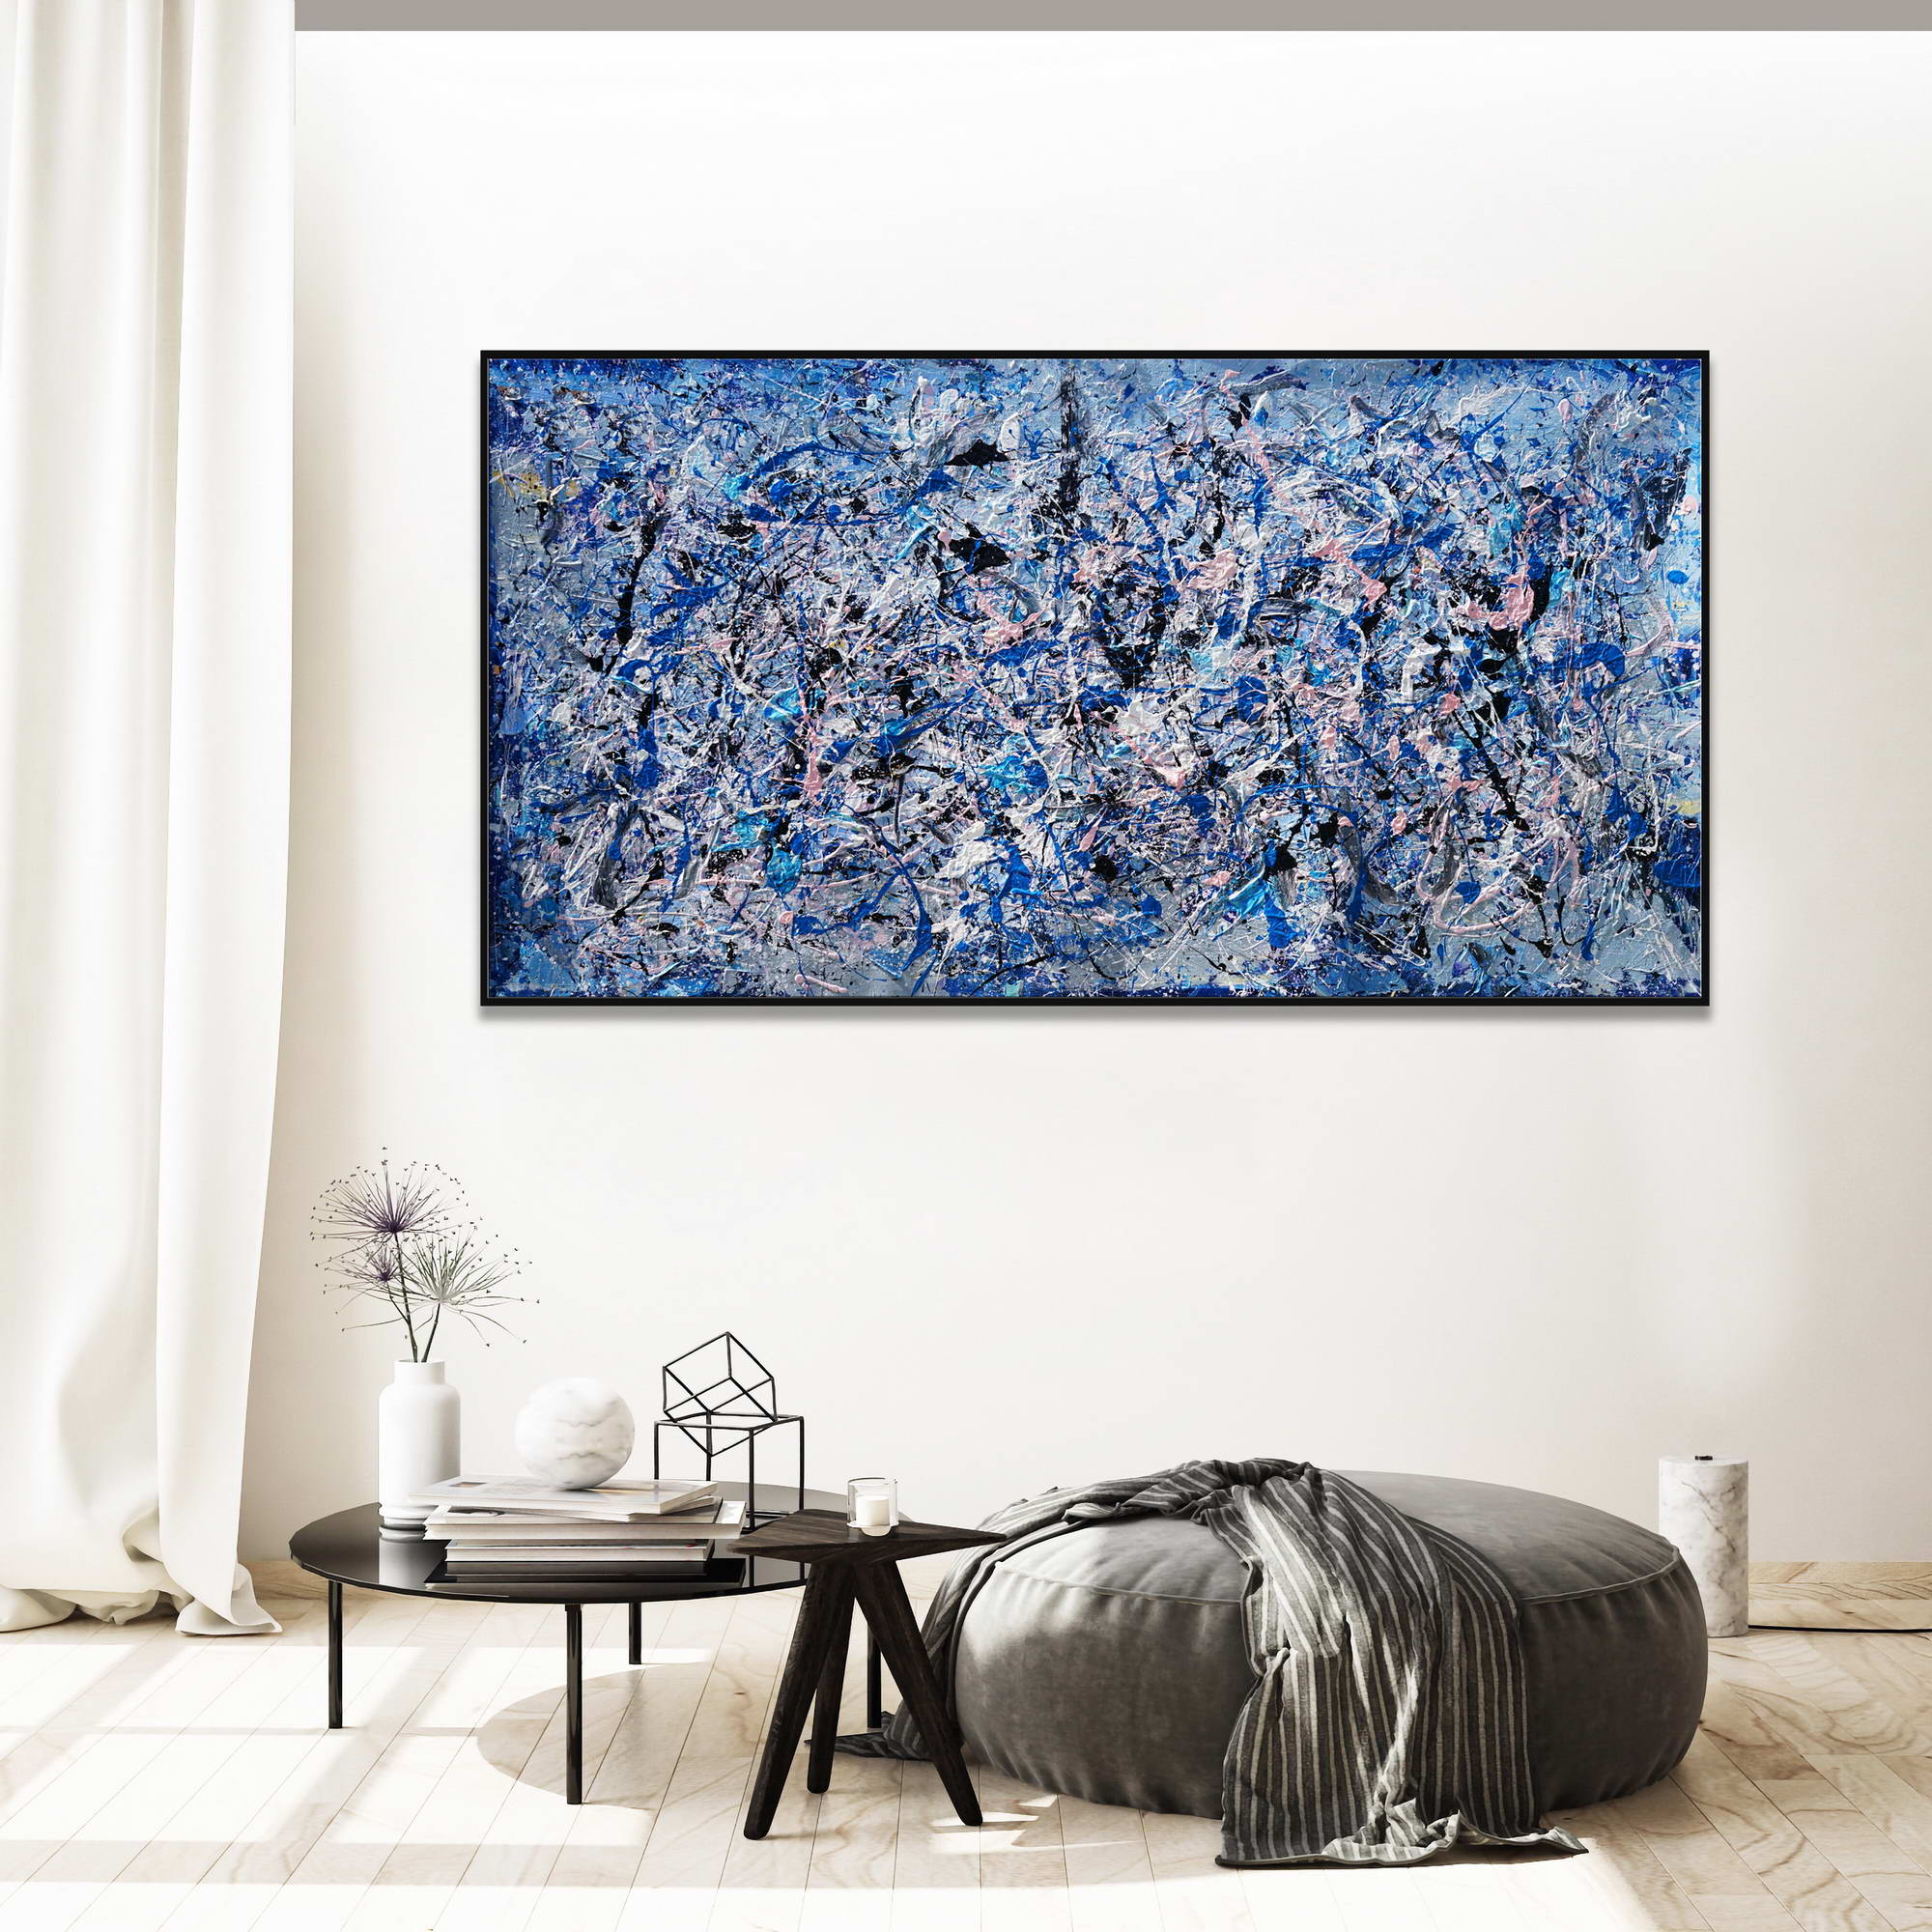 Dipinto a mano Astratto Bianco e Blu stile Pollock 75x150cm